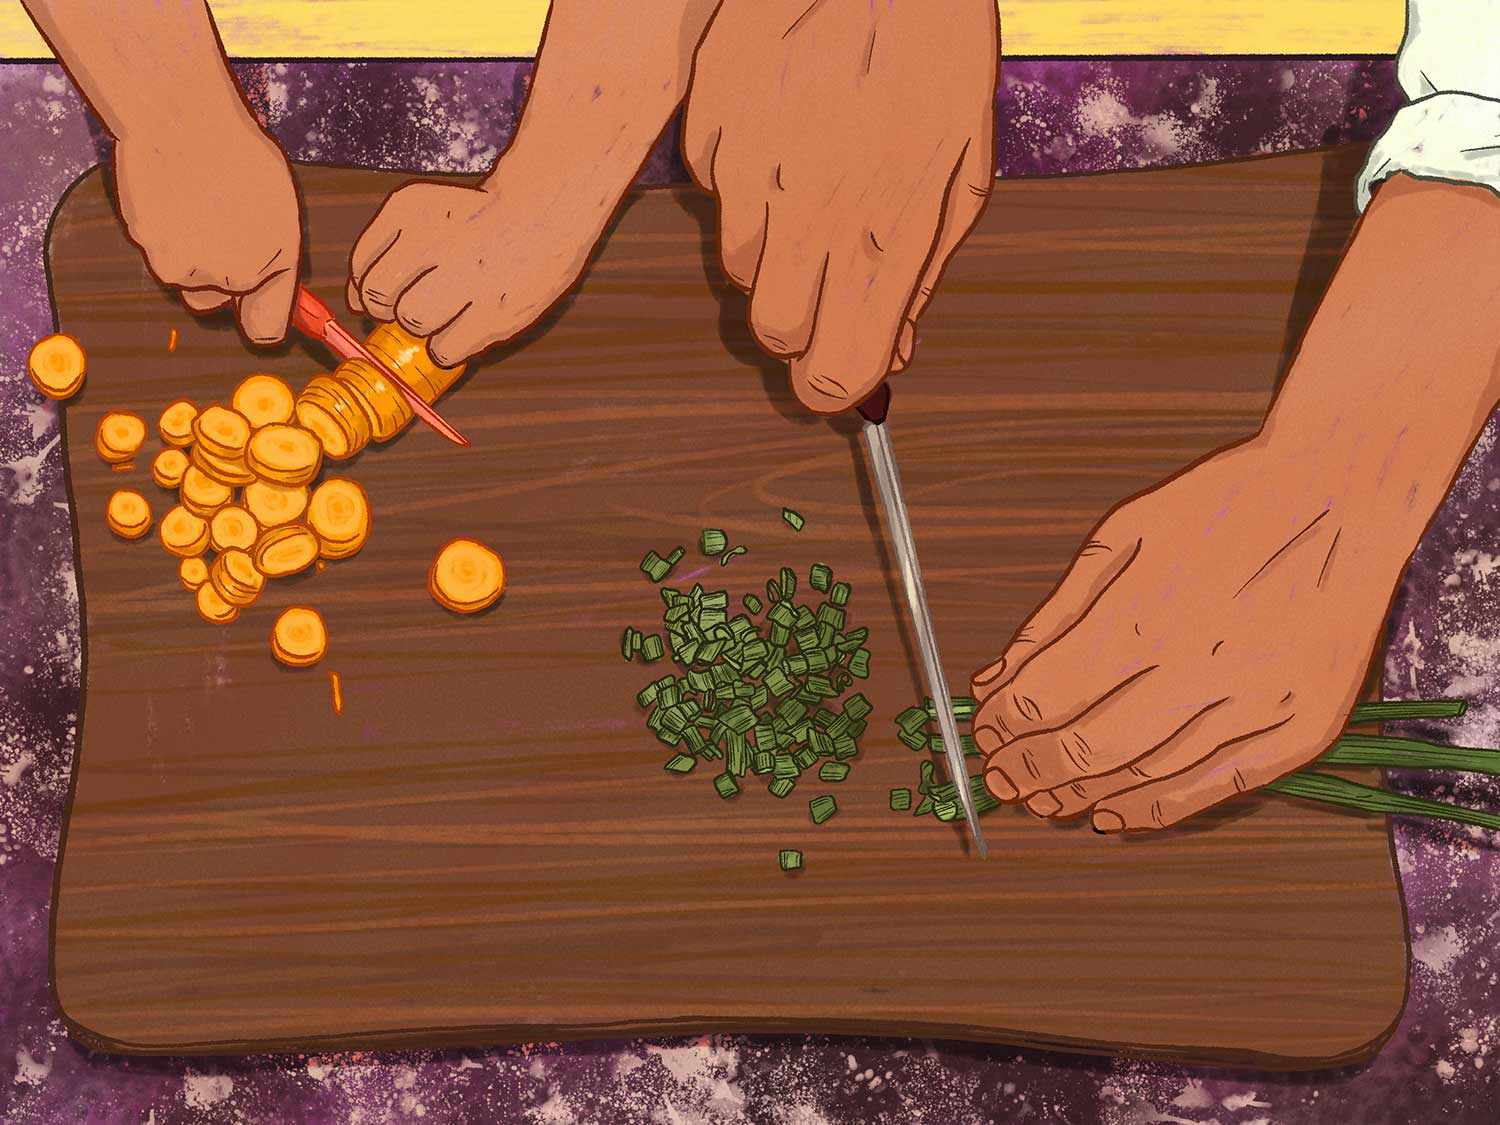 一个成年人的手和一个孩子的手并排在砧板上切菜的插图。